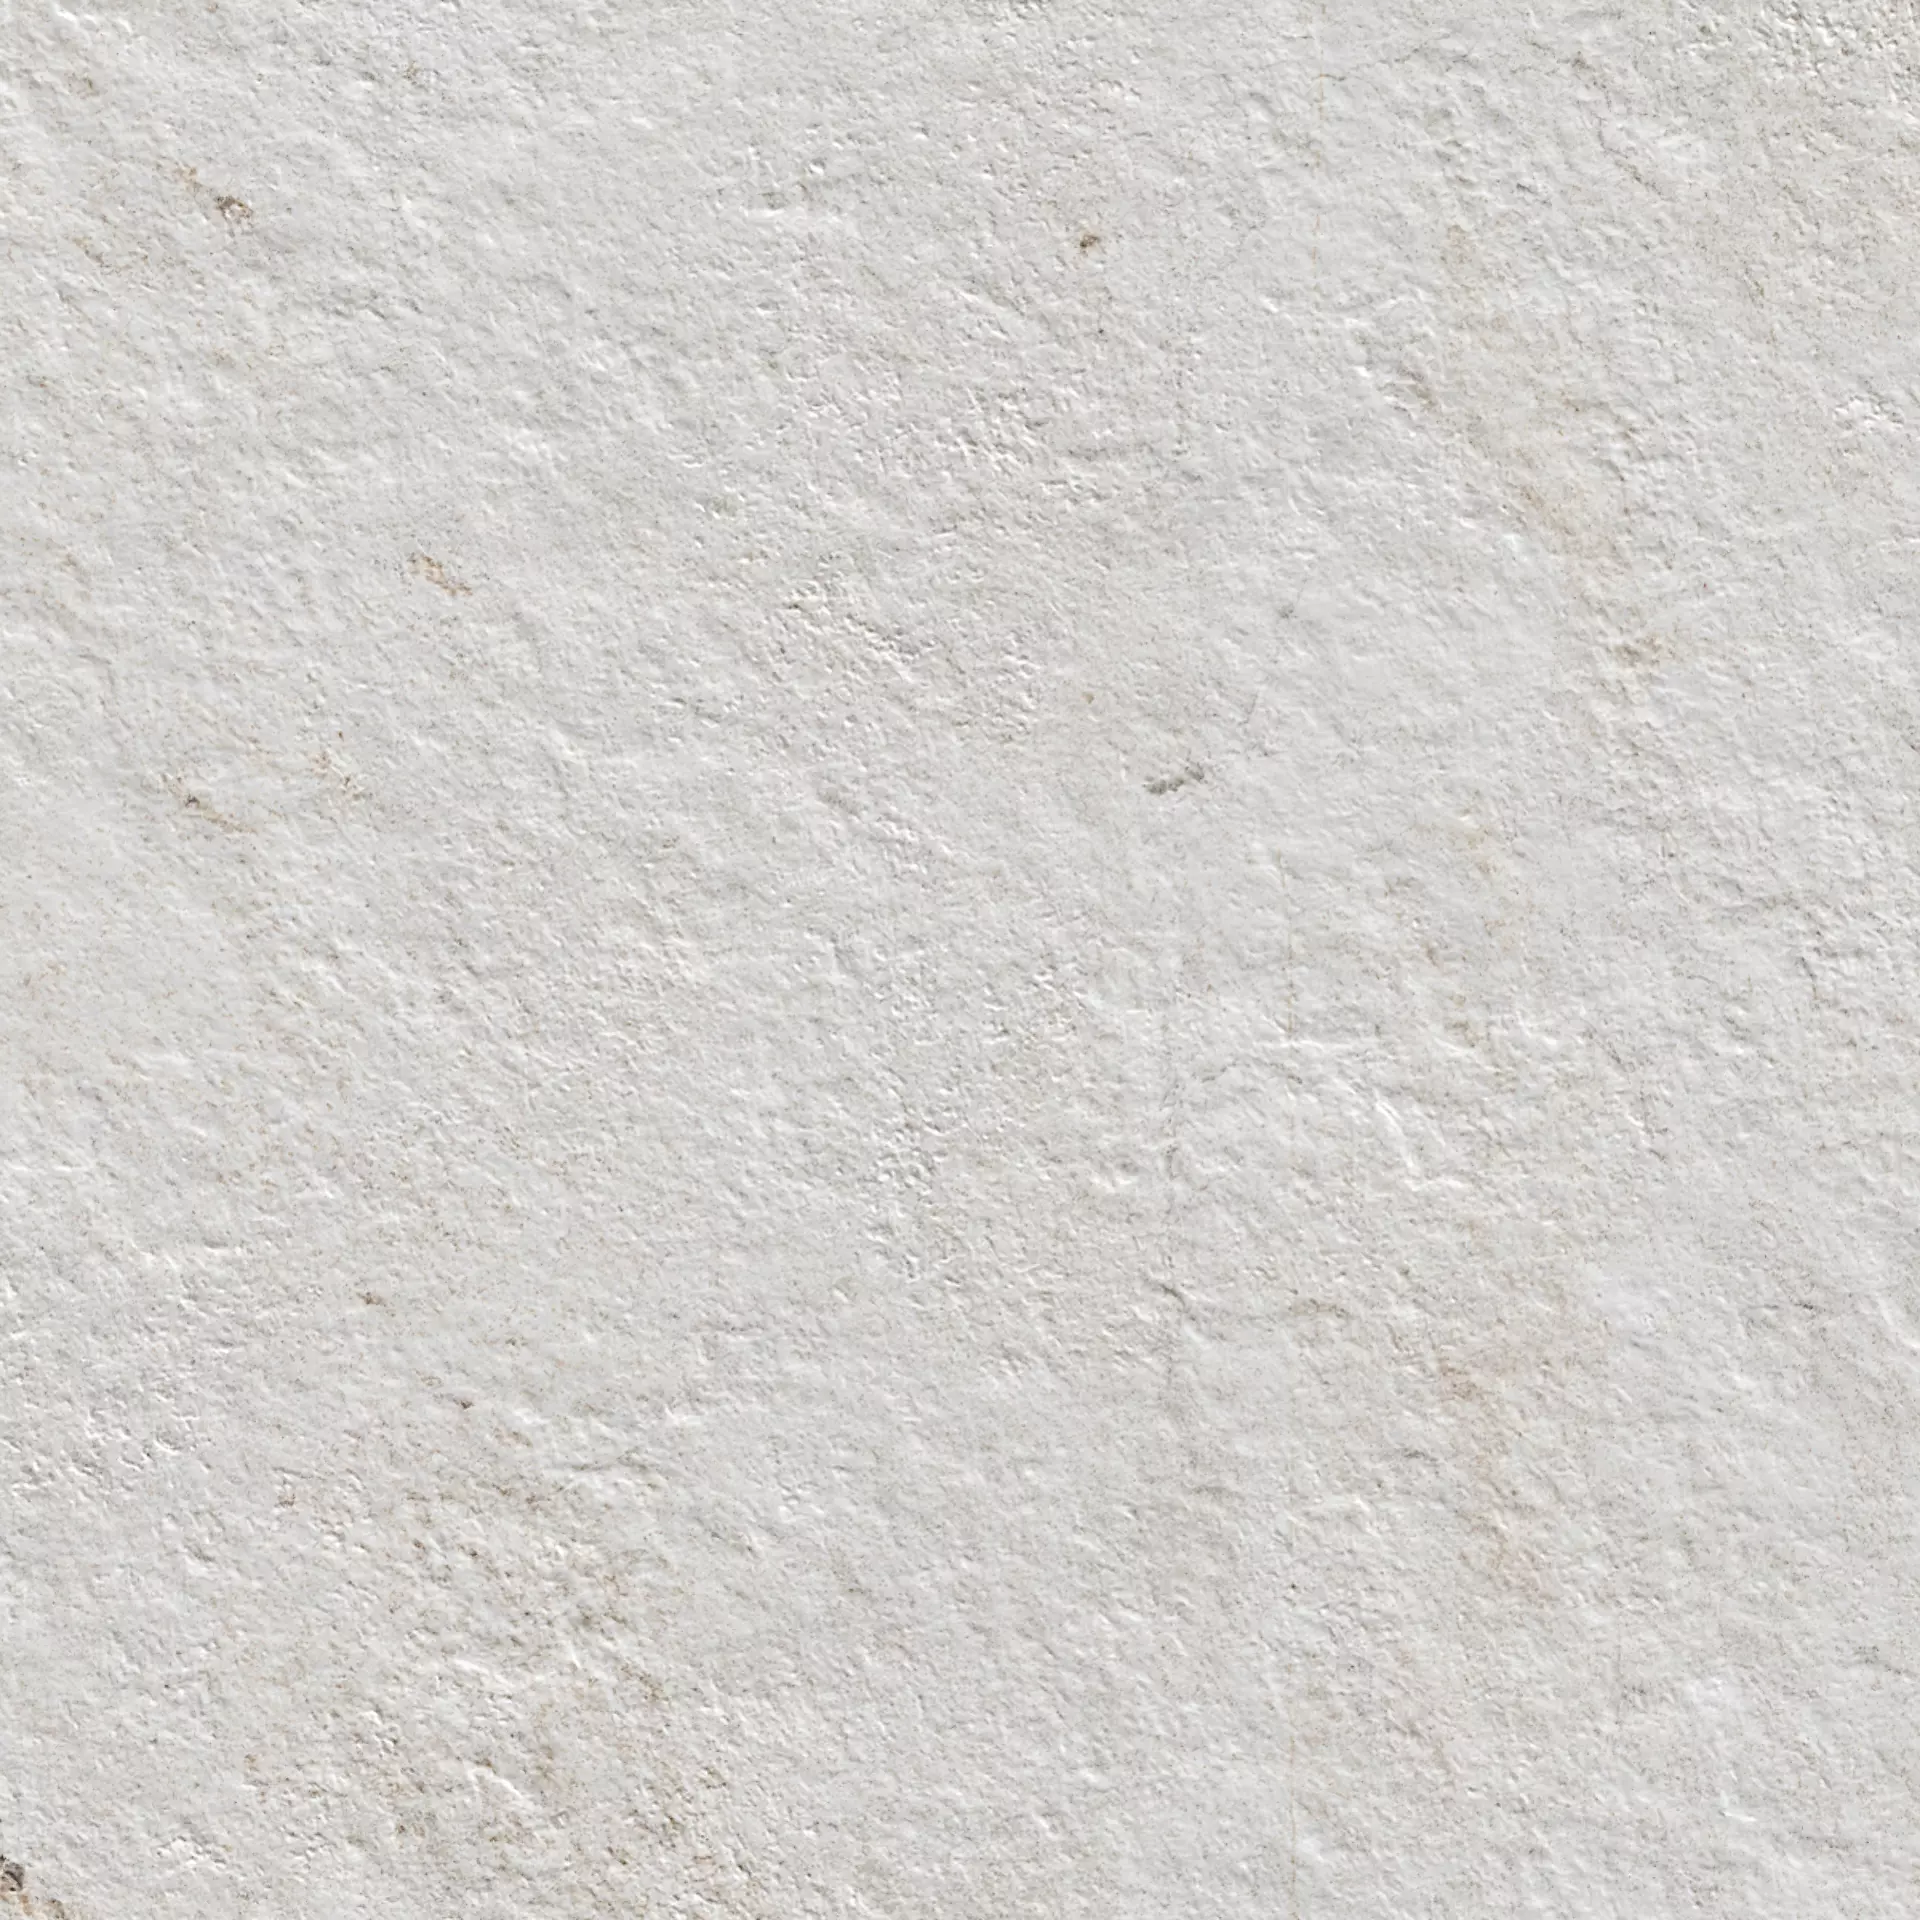 Bodenfliese,Wandfliese Marazzi Rocking White Strutturato White M170 strukturiert 30x30cm rektifiziert 9,5mm